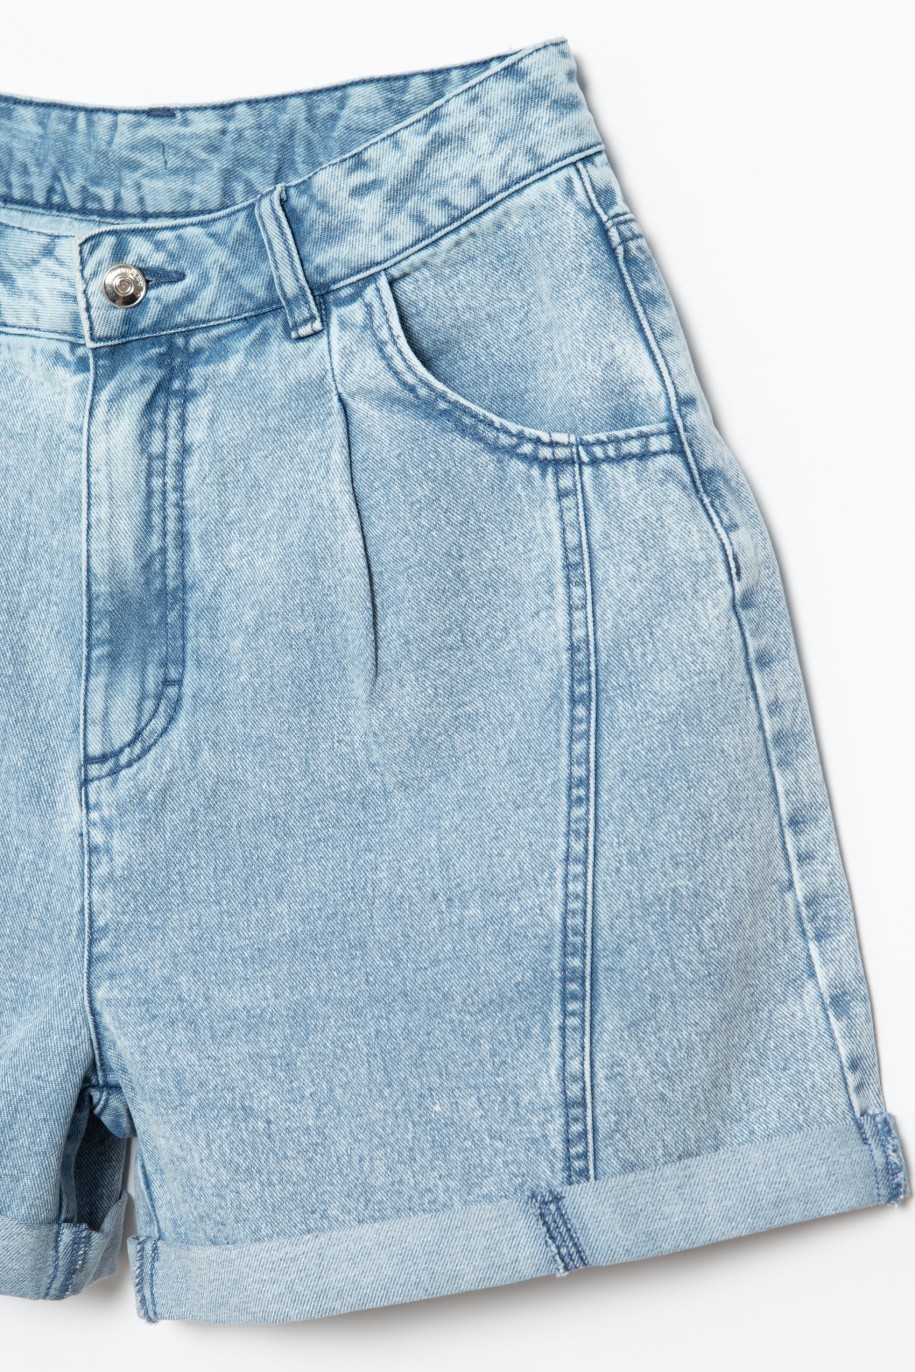 Jeansowe szorty dla dziewczyny z ozdobnymi przeszyciami - 28272